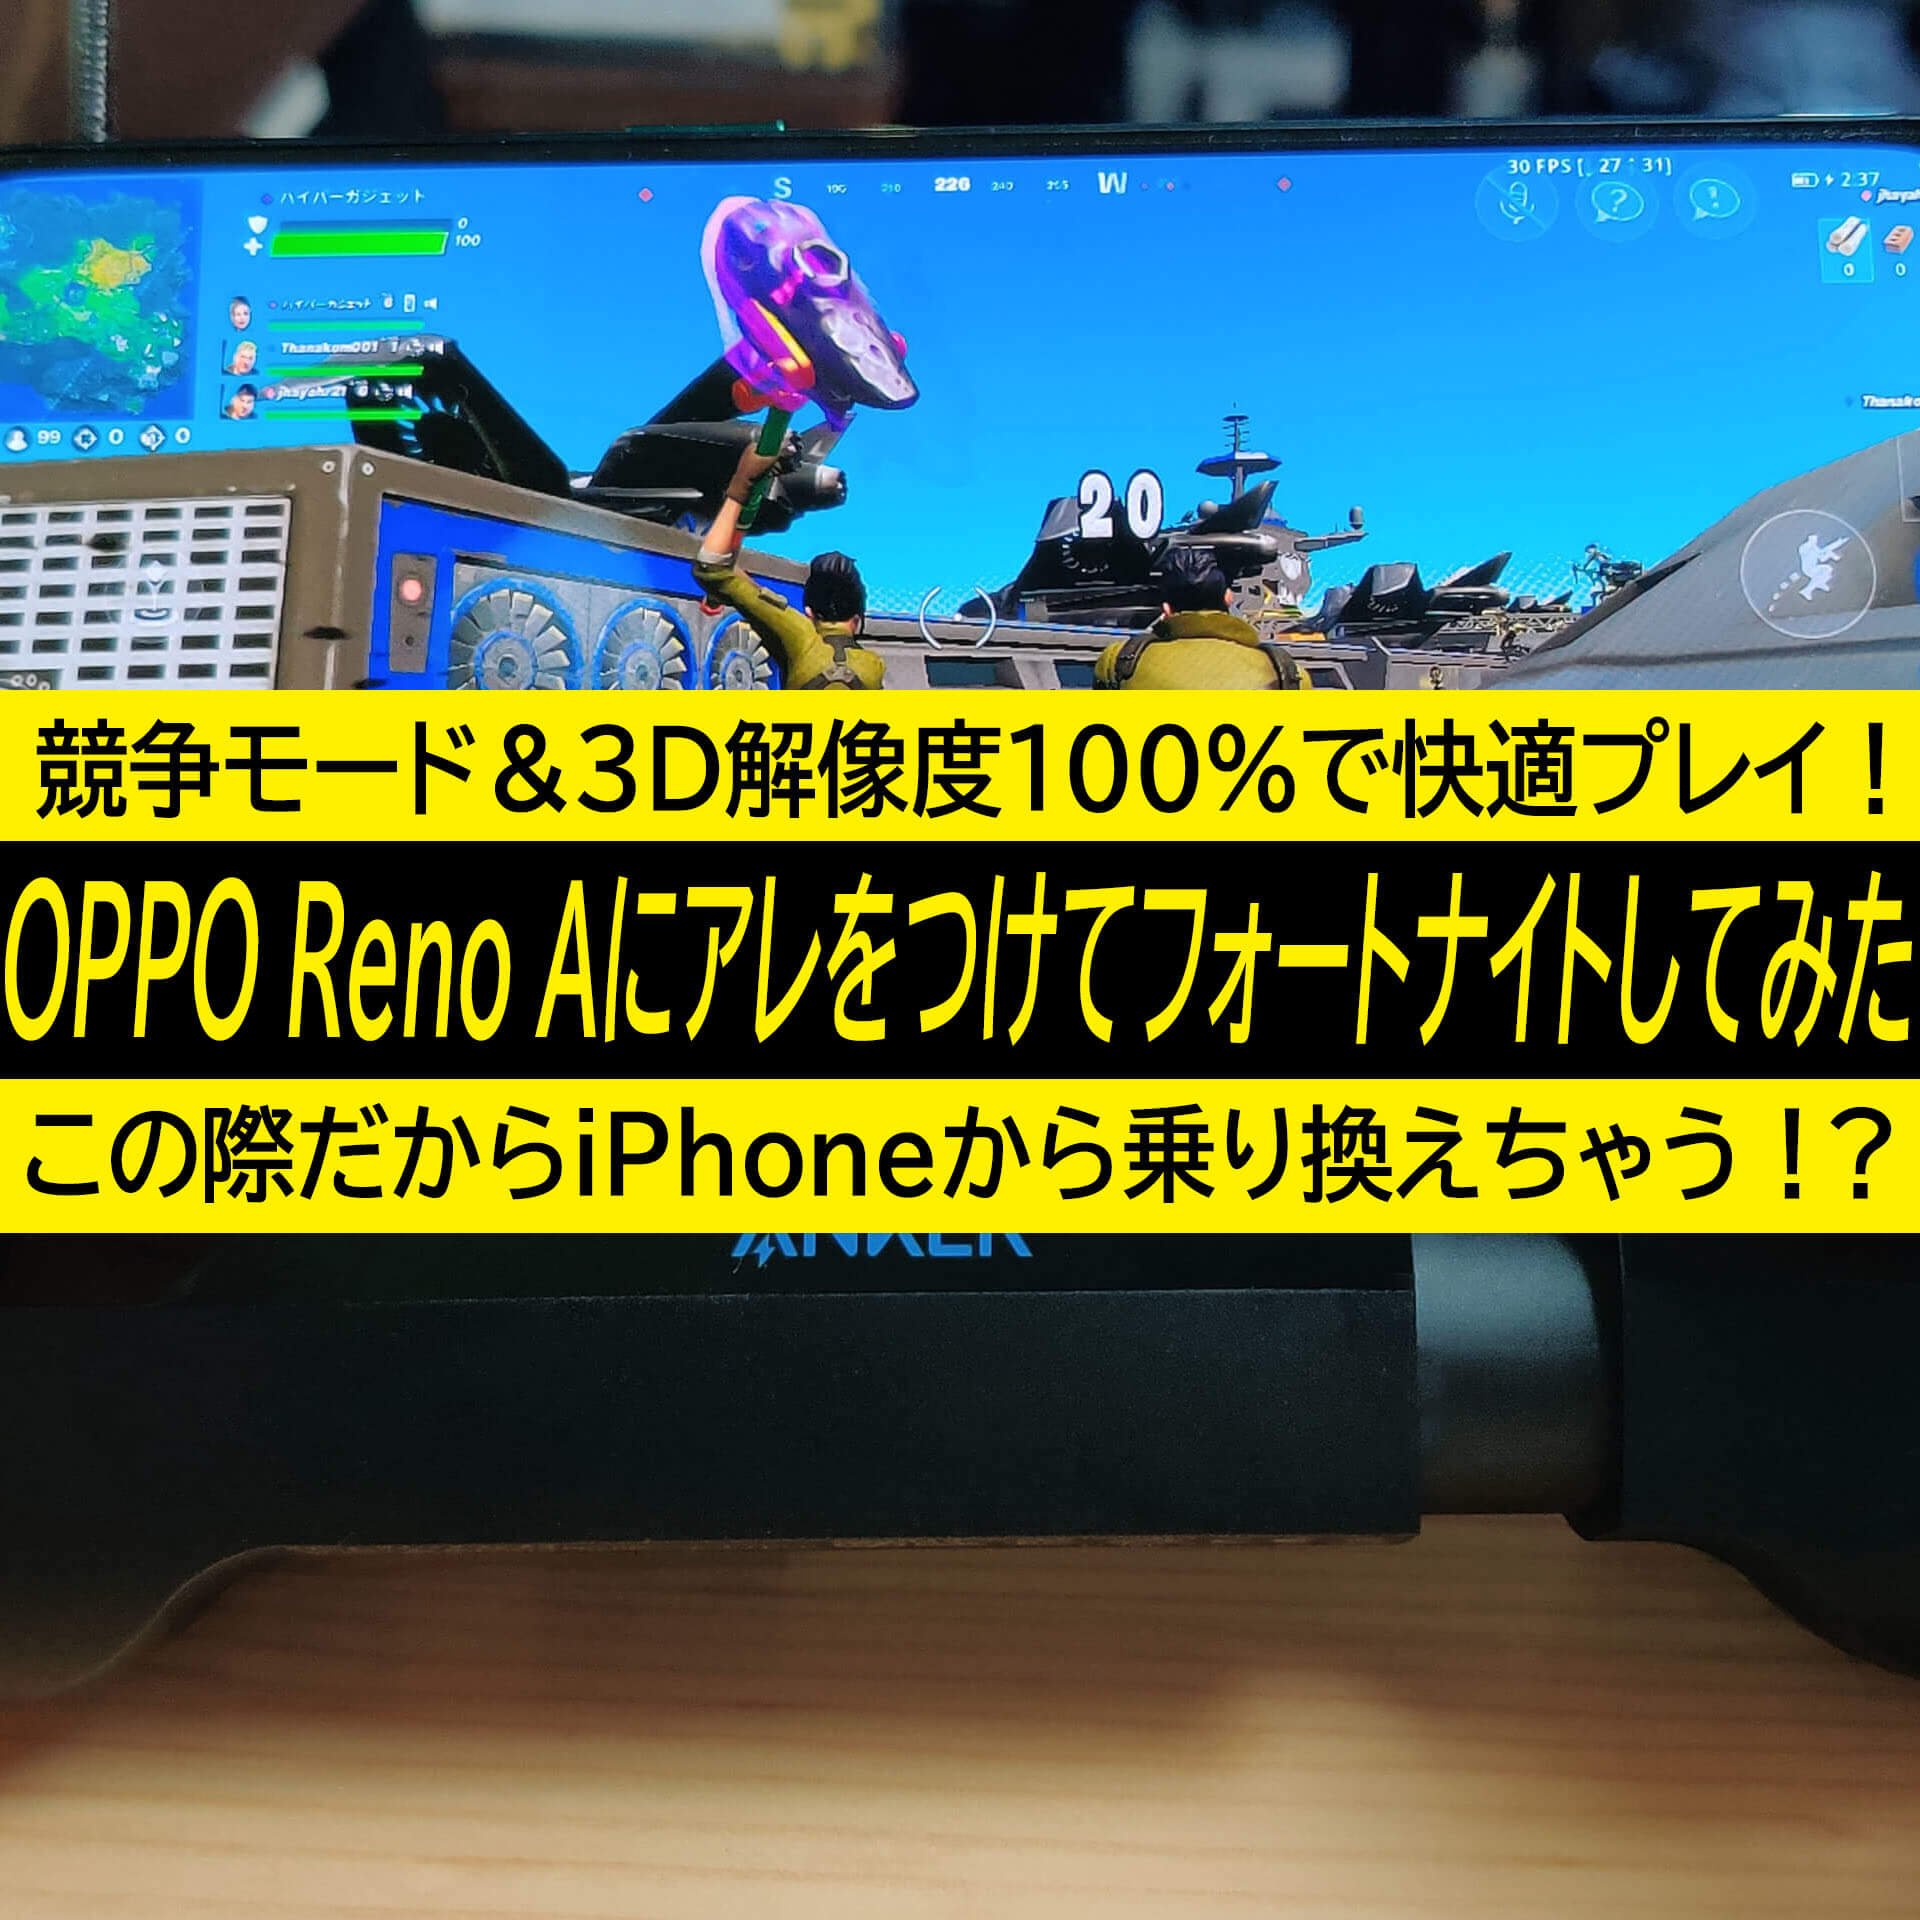 Oppo Reno Aにアレをつけて競争モード 3d解像度100 でフォートナイト Iphoneから乗り換えちゃう